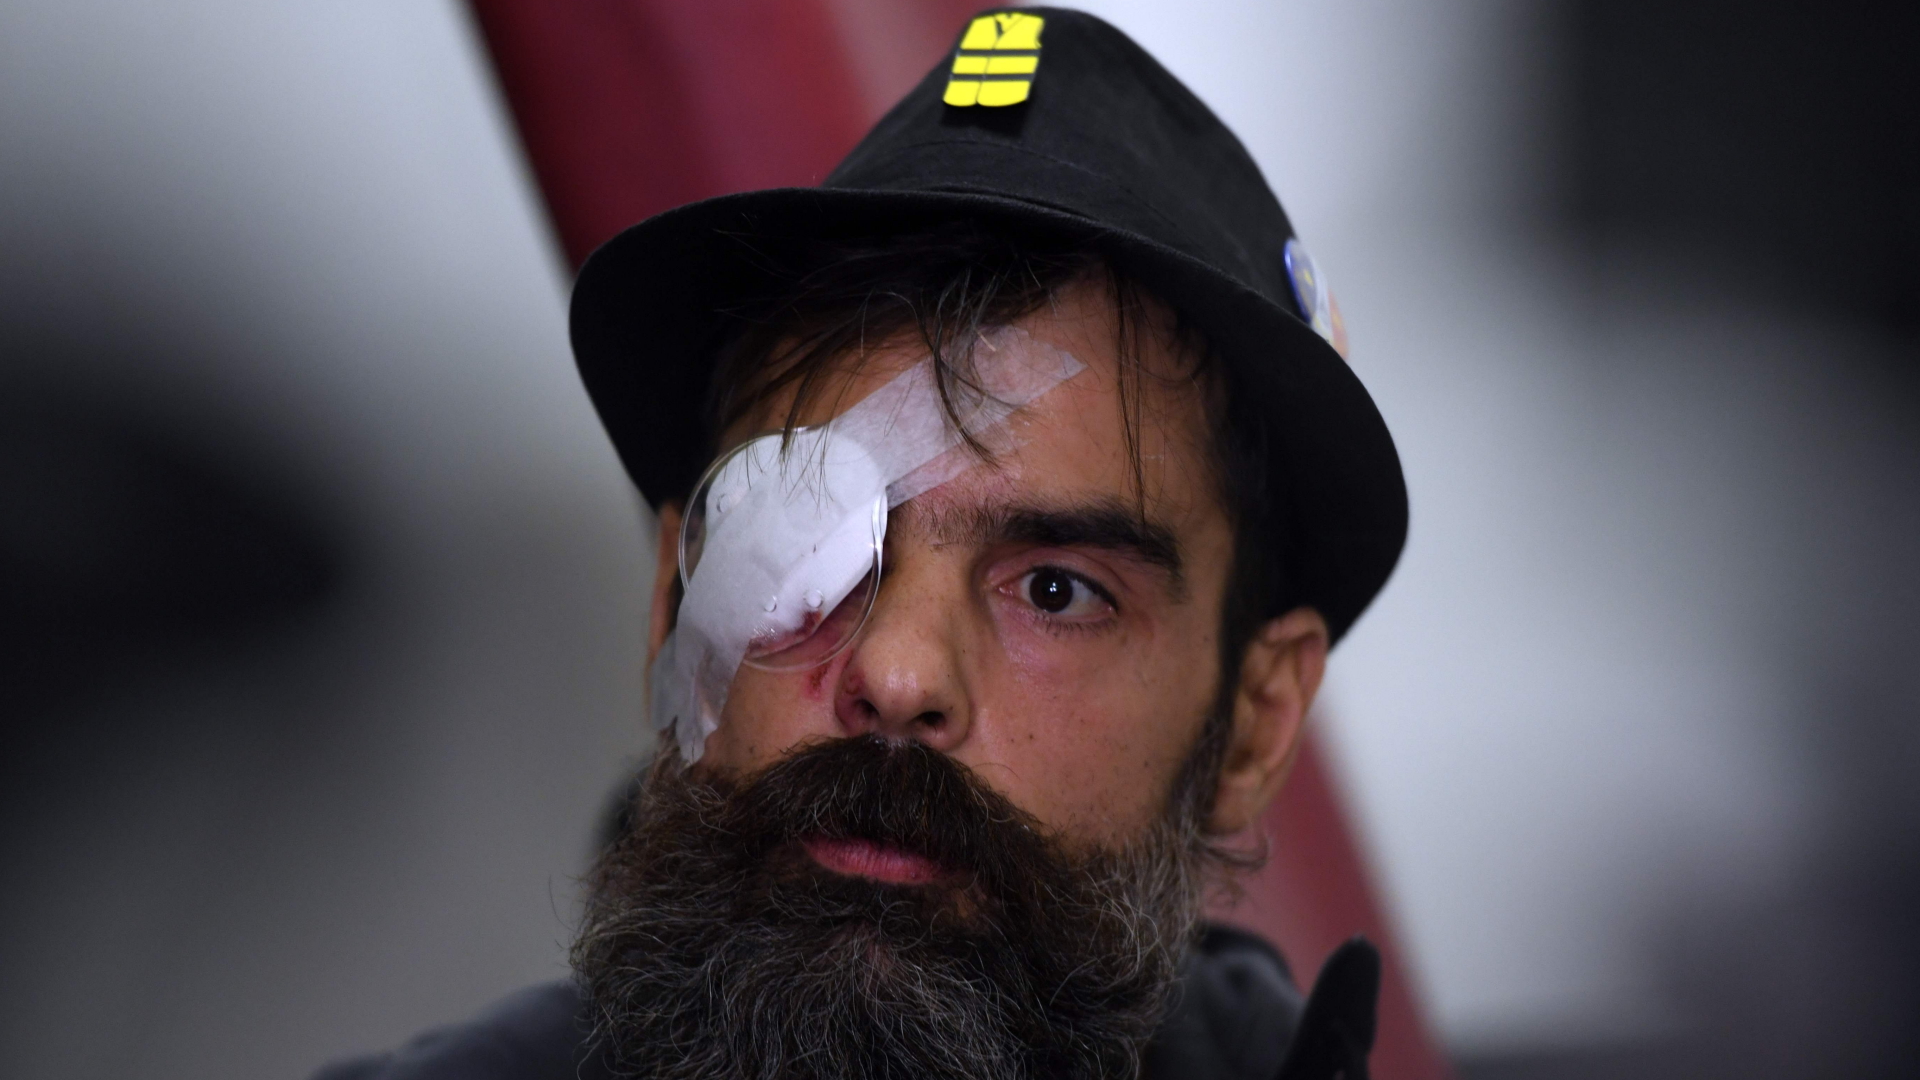 Der am Auge verletzte "Gelbwesten"-Anführer Rodrigues | AFP